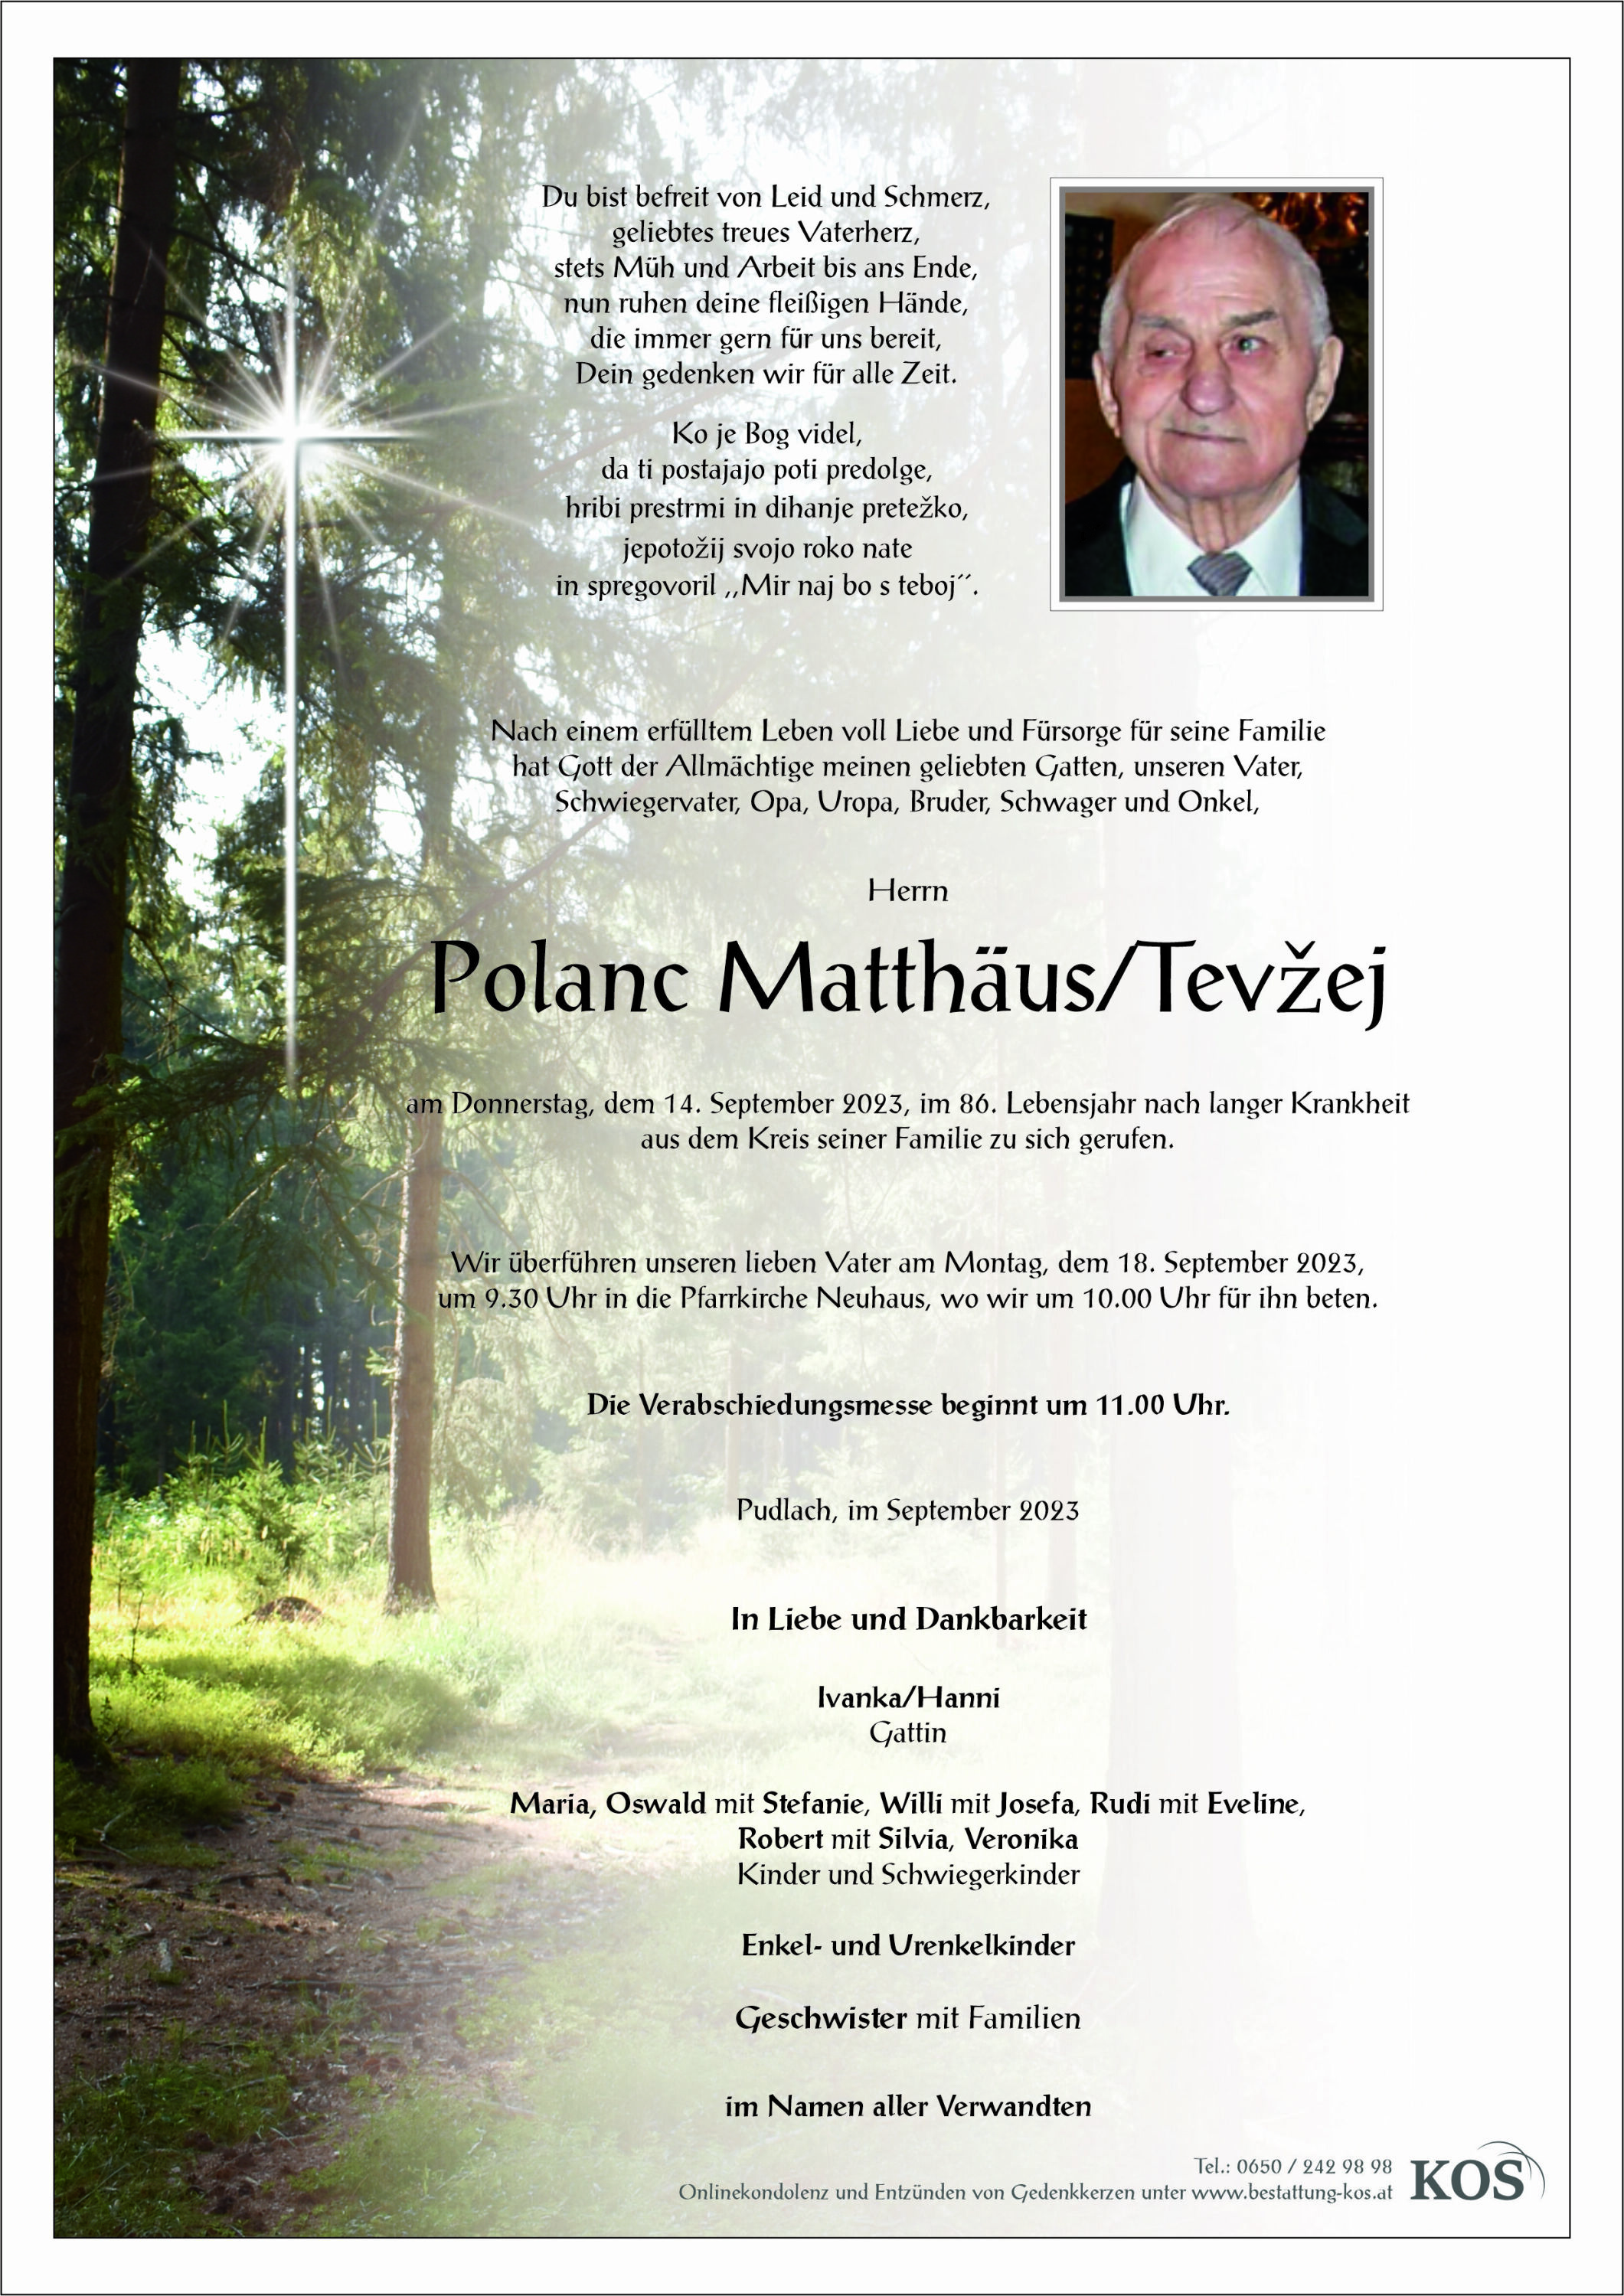 Matthäus/Tevžej Polanc